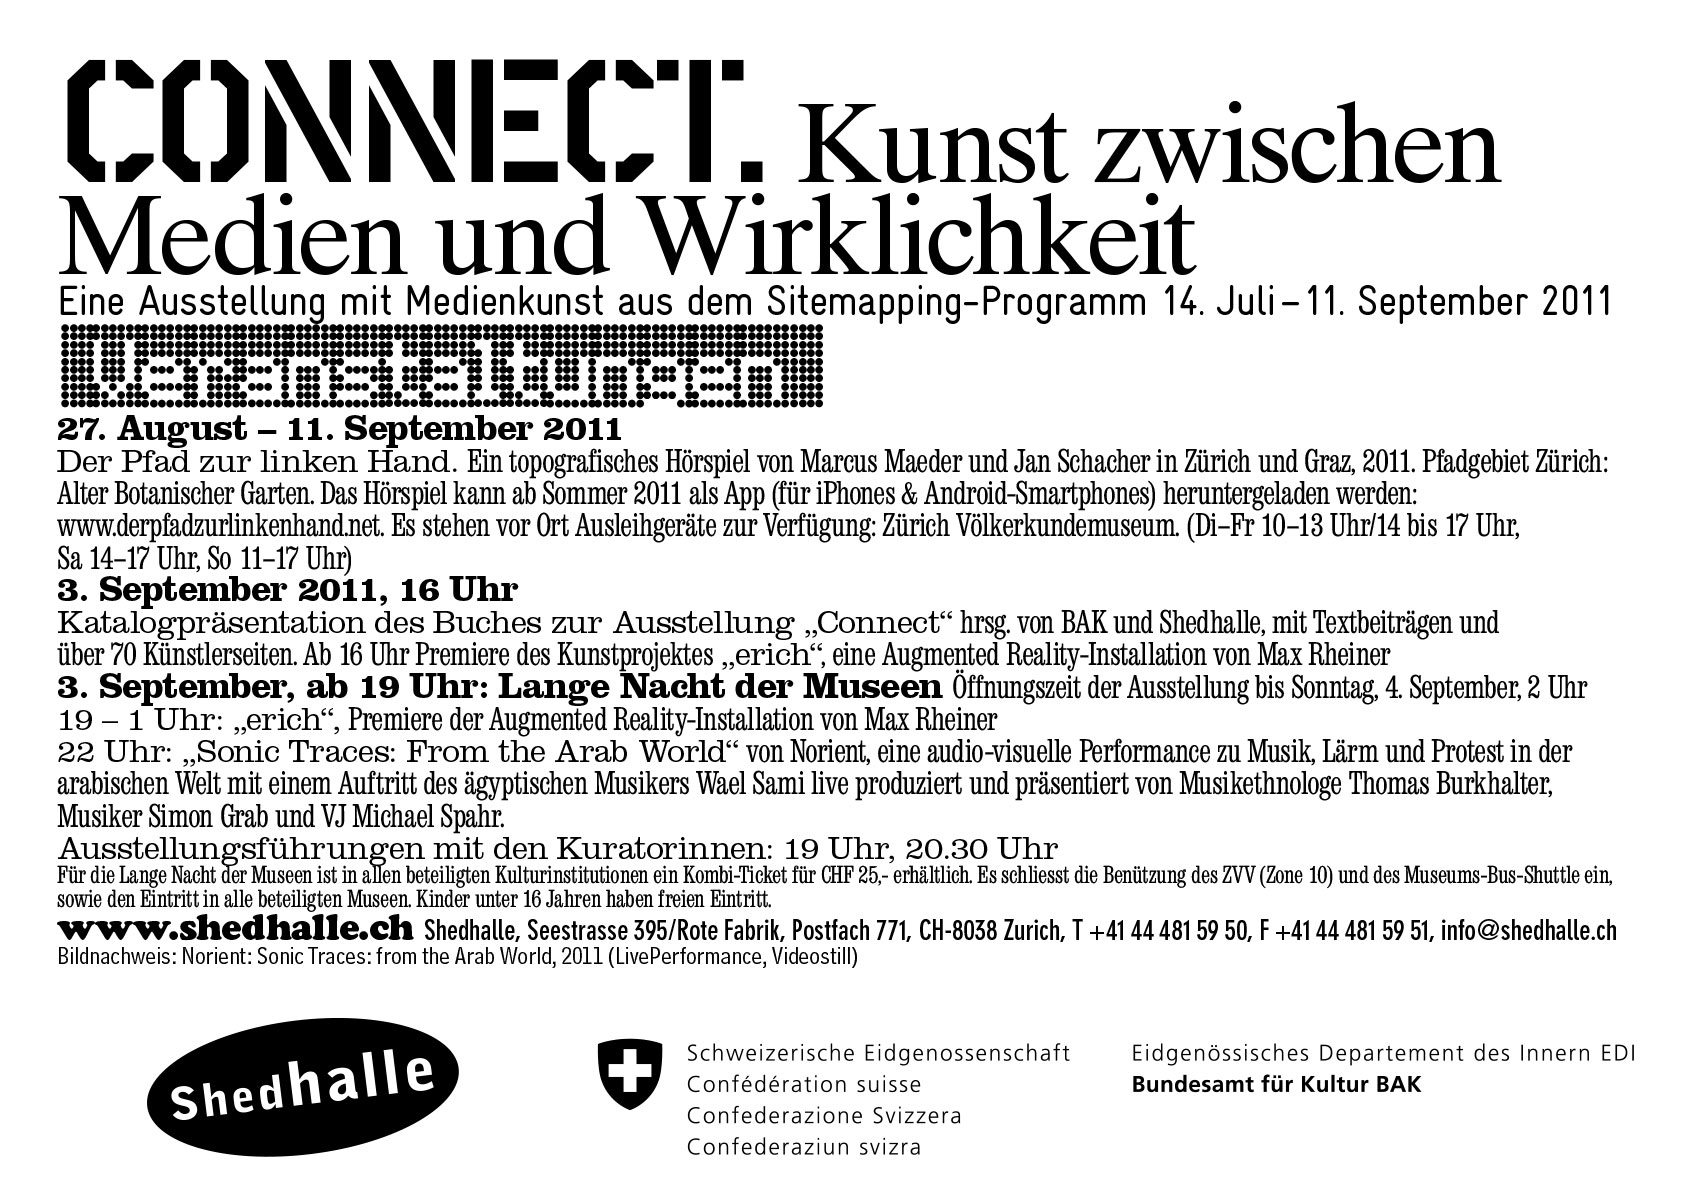 Shedhalle Zürich Ausstellung Einladungskarte